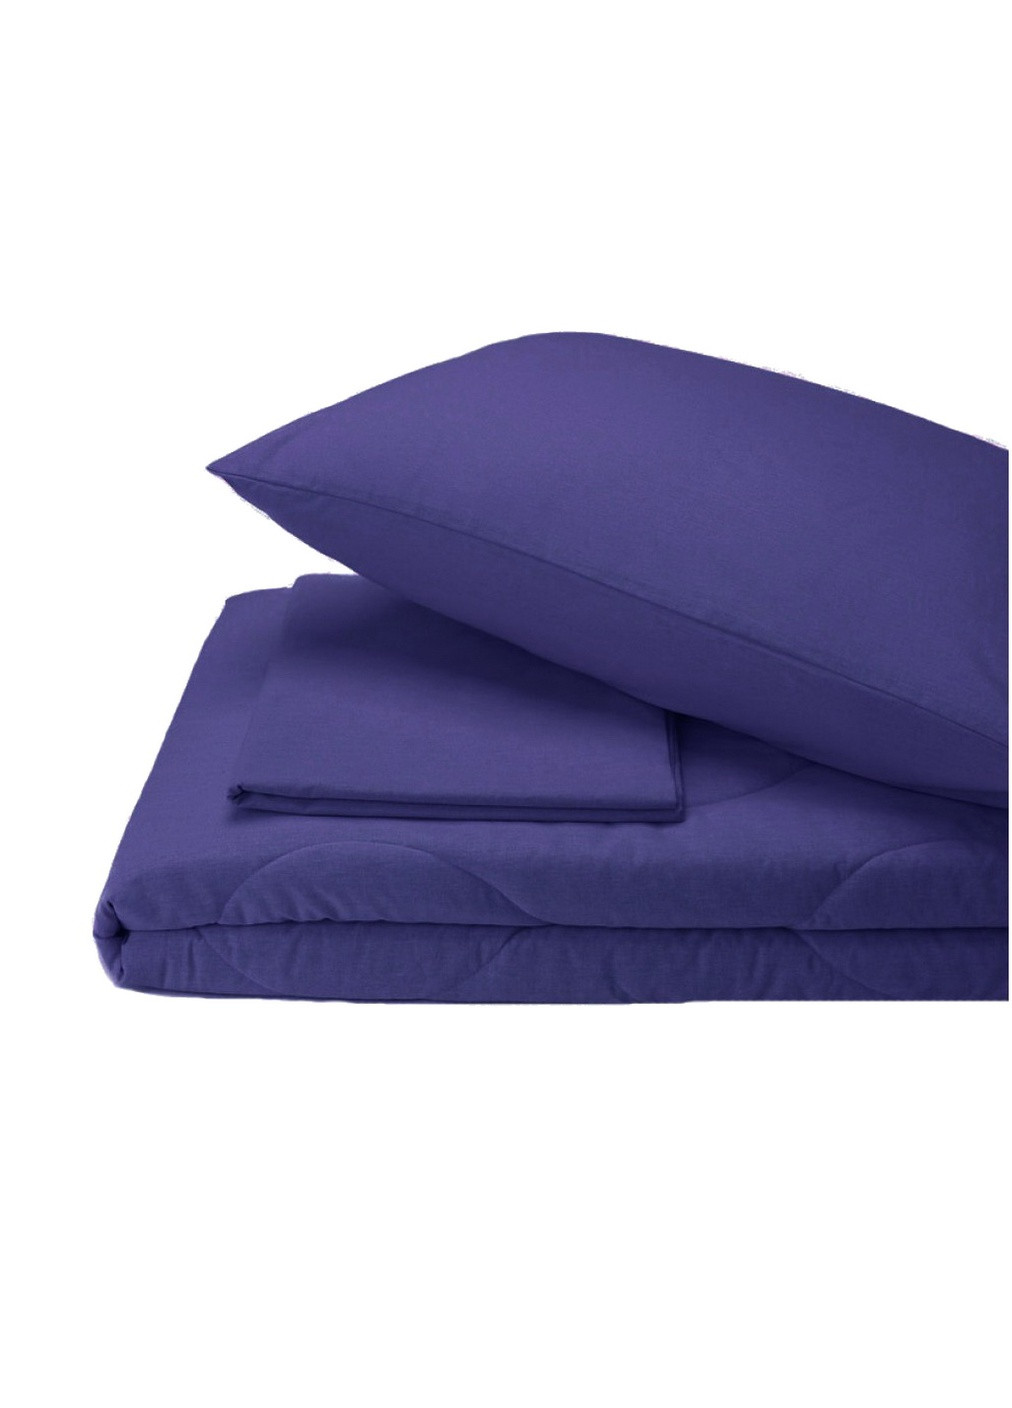 Набор хлопковый 172х205 Silensa одеяло простынь наволочки синий двуспальный SoundSleep (259591981)